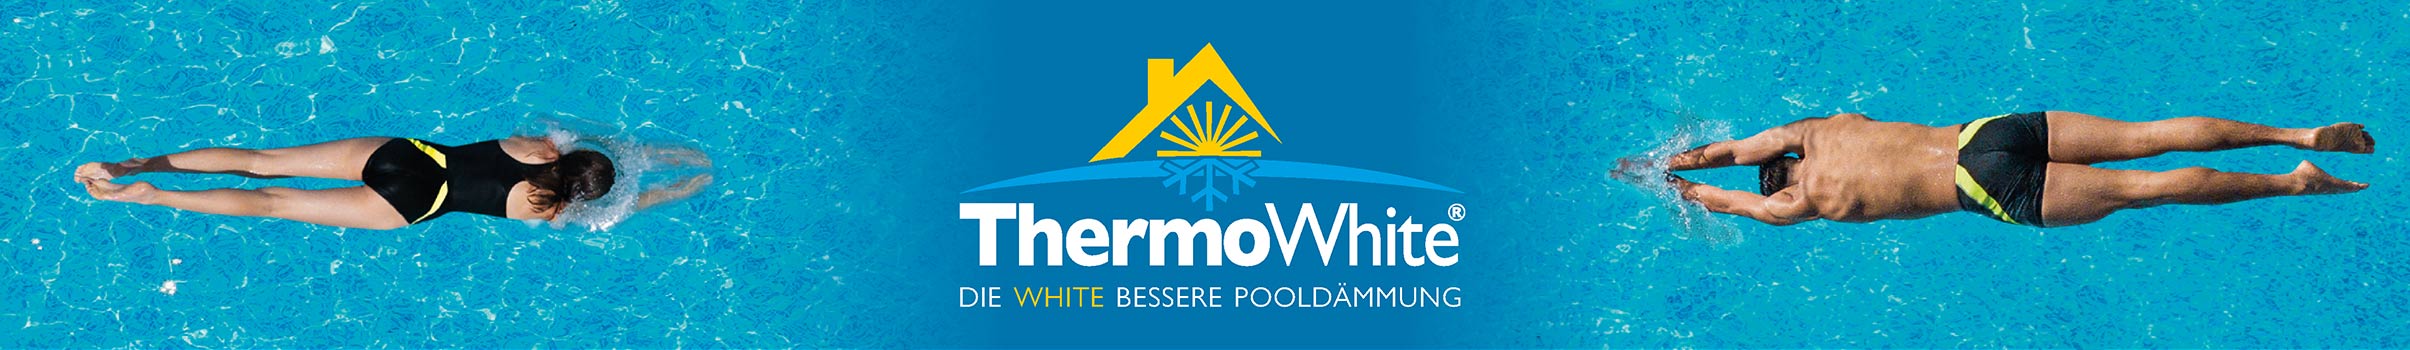 thermowhite-poolhinterfuellung-schwimmer-mit-logo